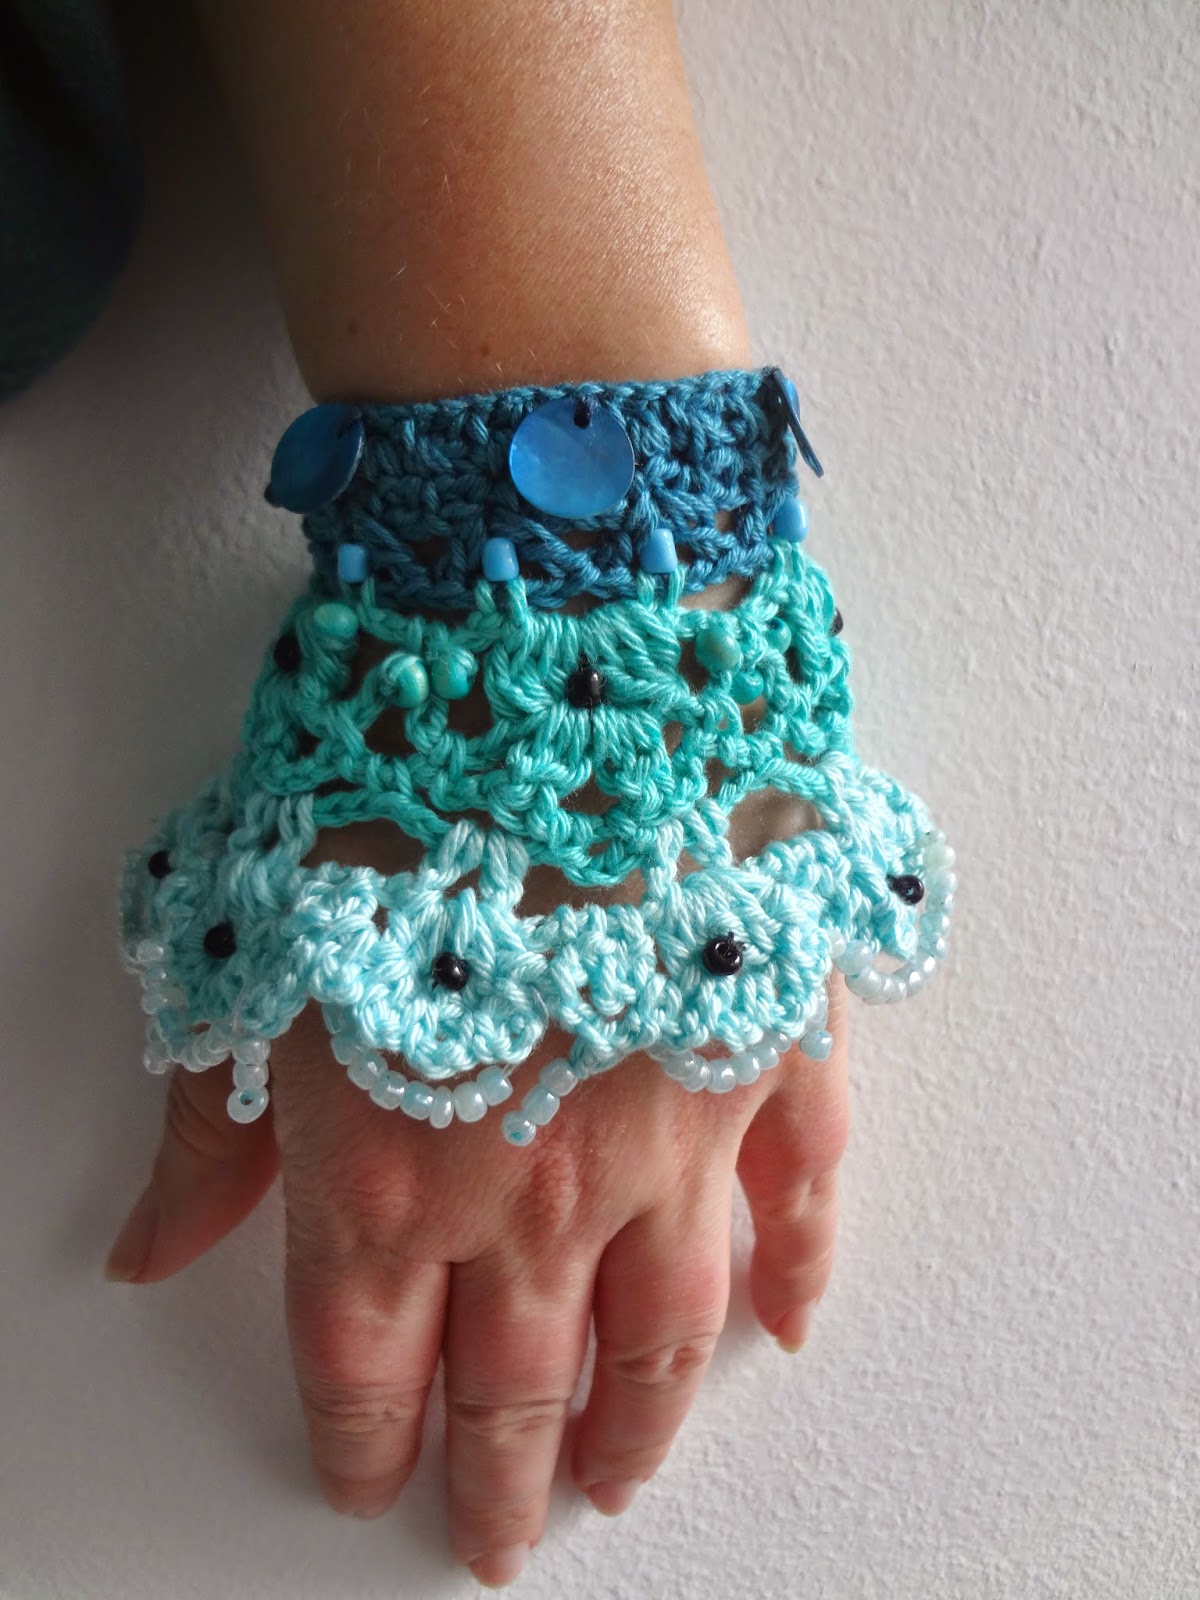 Little Treasures: Crochet Pattern for Lace Wrist Warmers